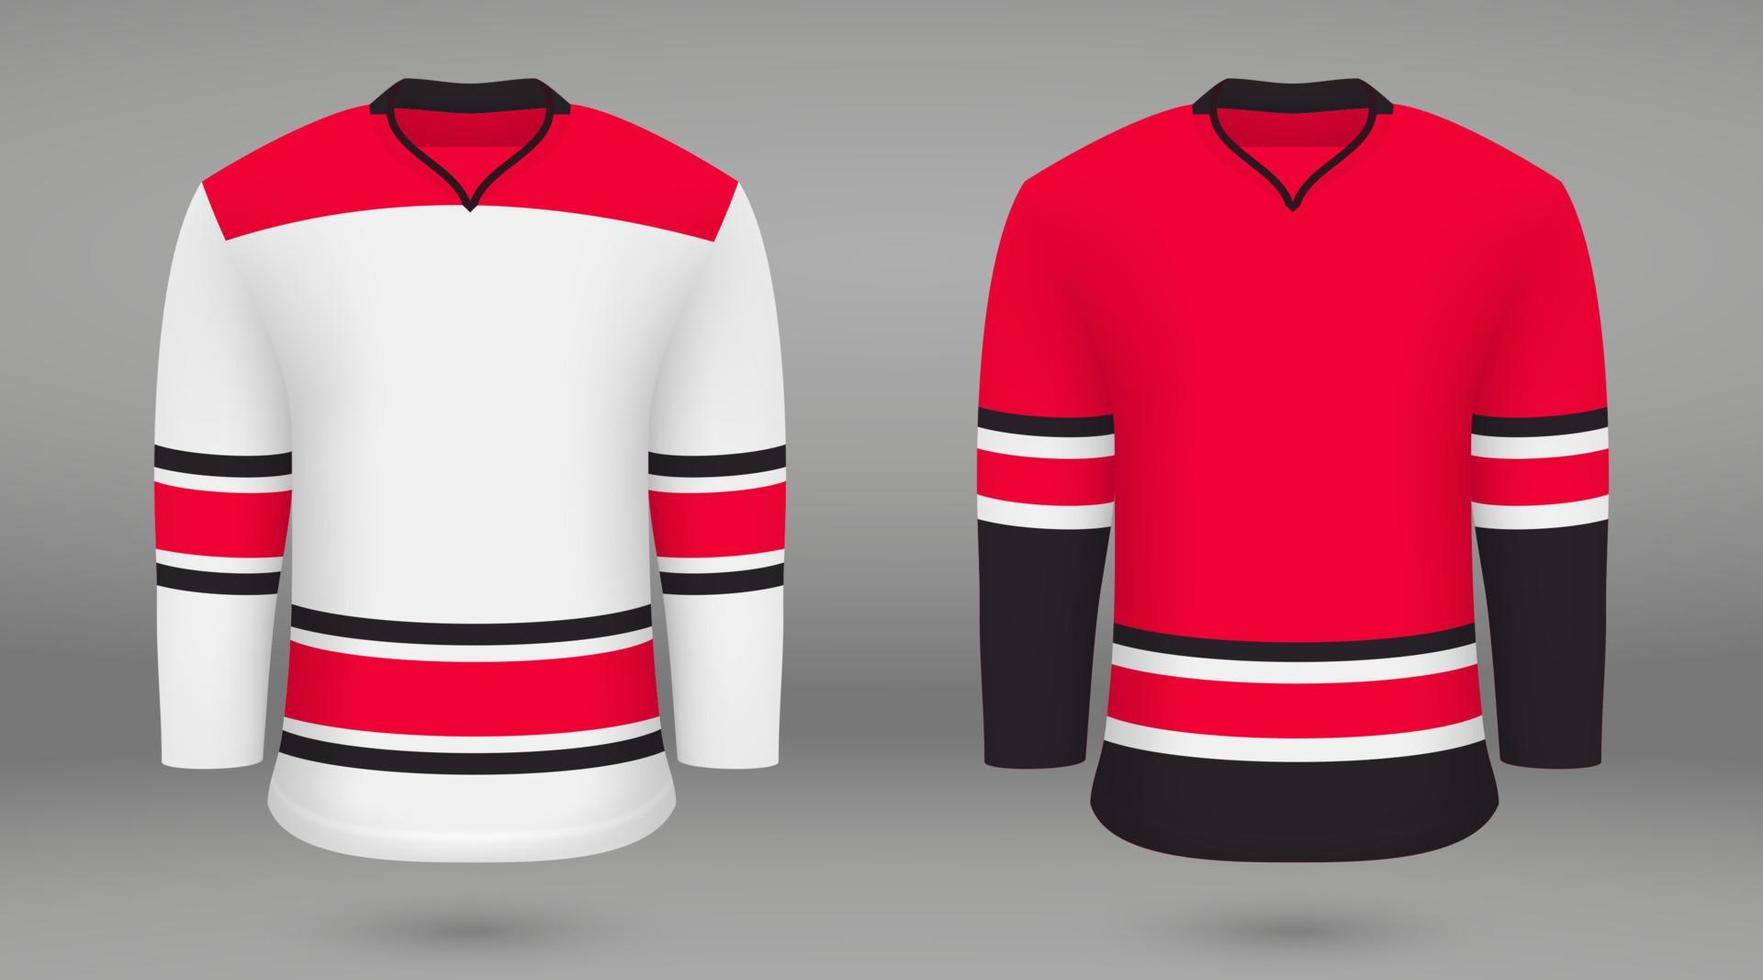 camisa modelo fuerza hockey jersey vector